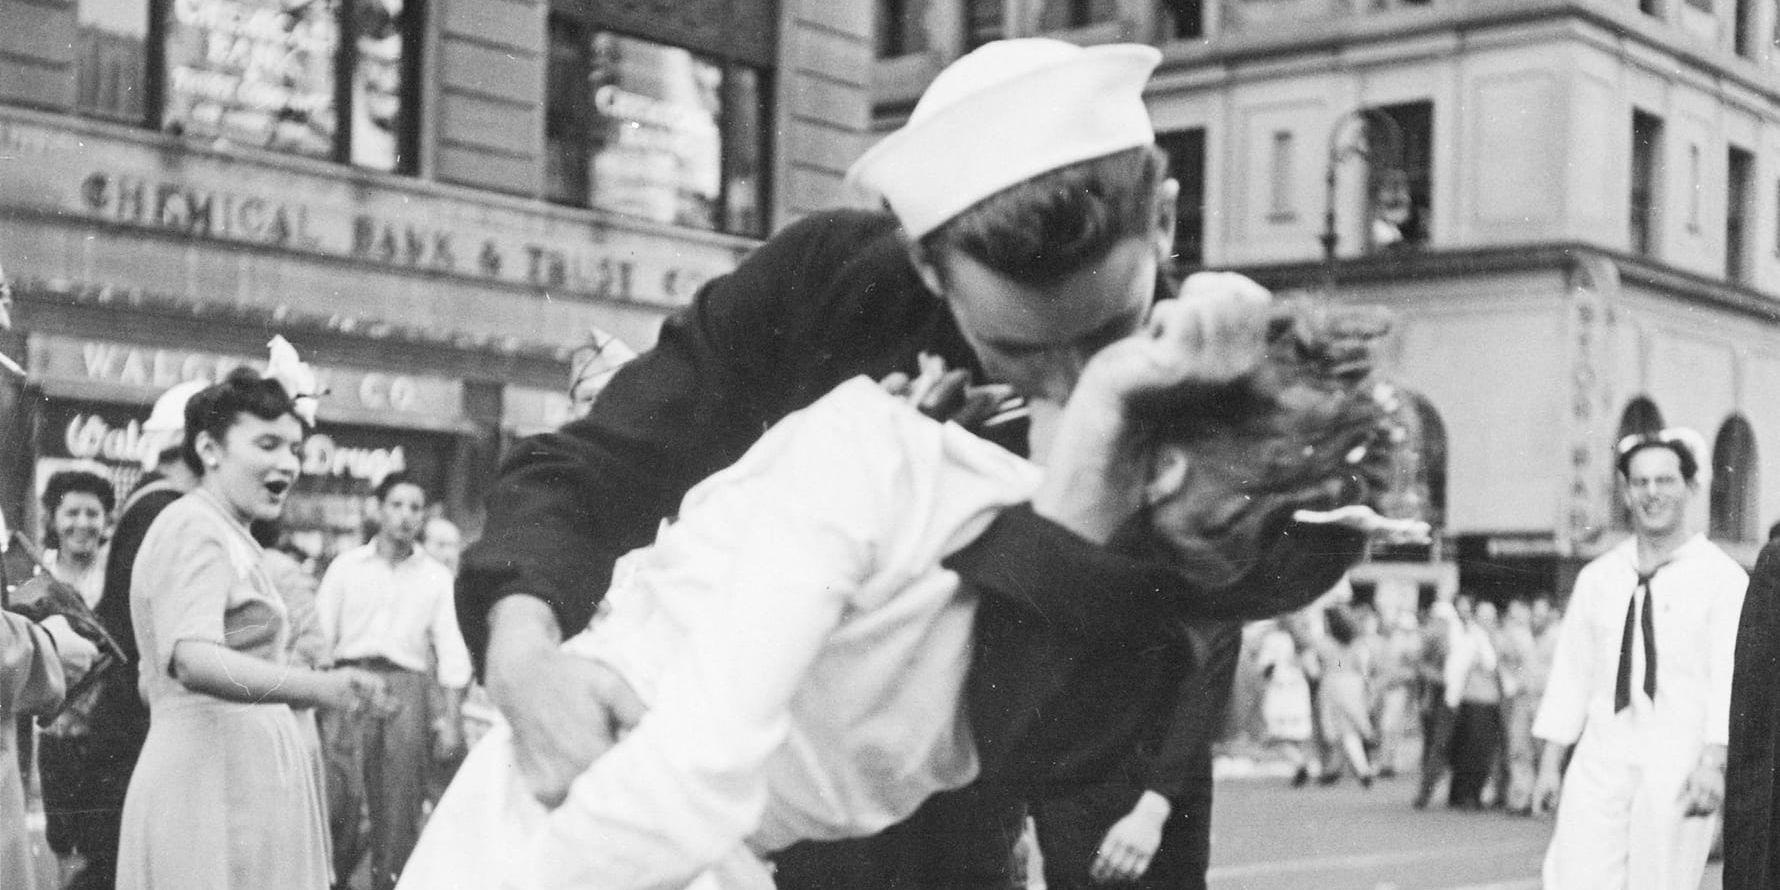 "Kissing sailor" eller den kyssande sjömannen från den kända bilden i Life Magazine. Victor Jorgensens bild är inte upphovsrättsskyddad och visar paret från en annan vinkel än på det kända fotografiet från Life. Arkivbild.